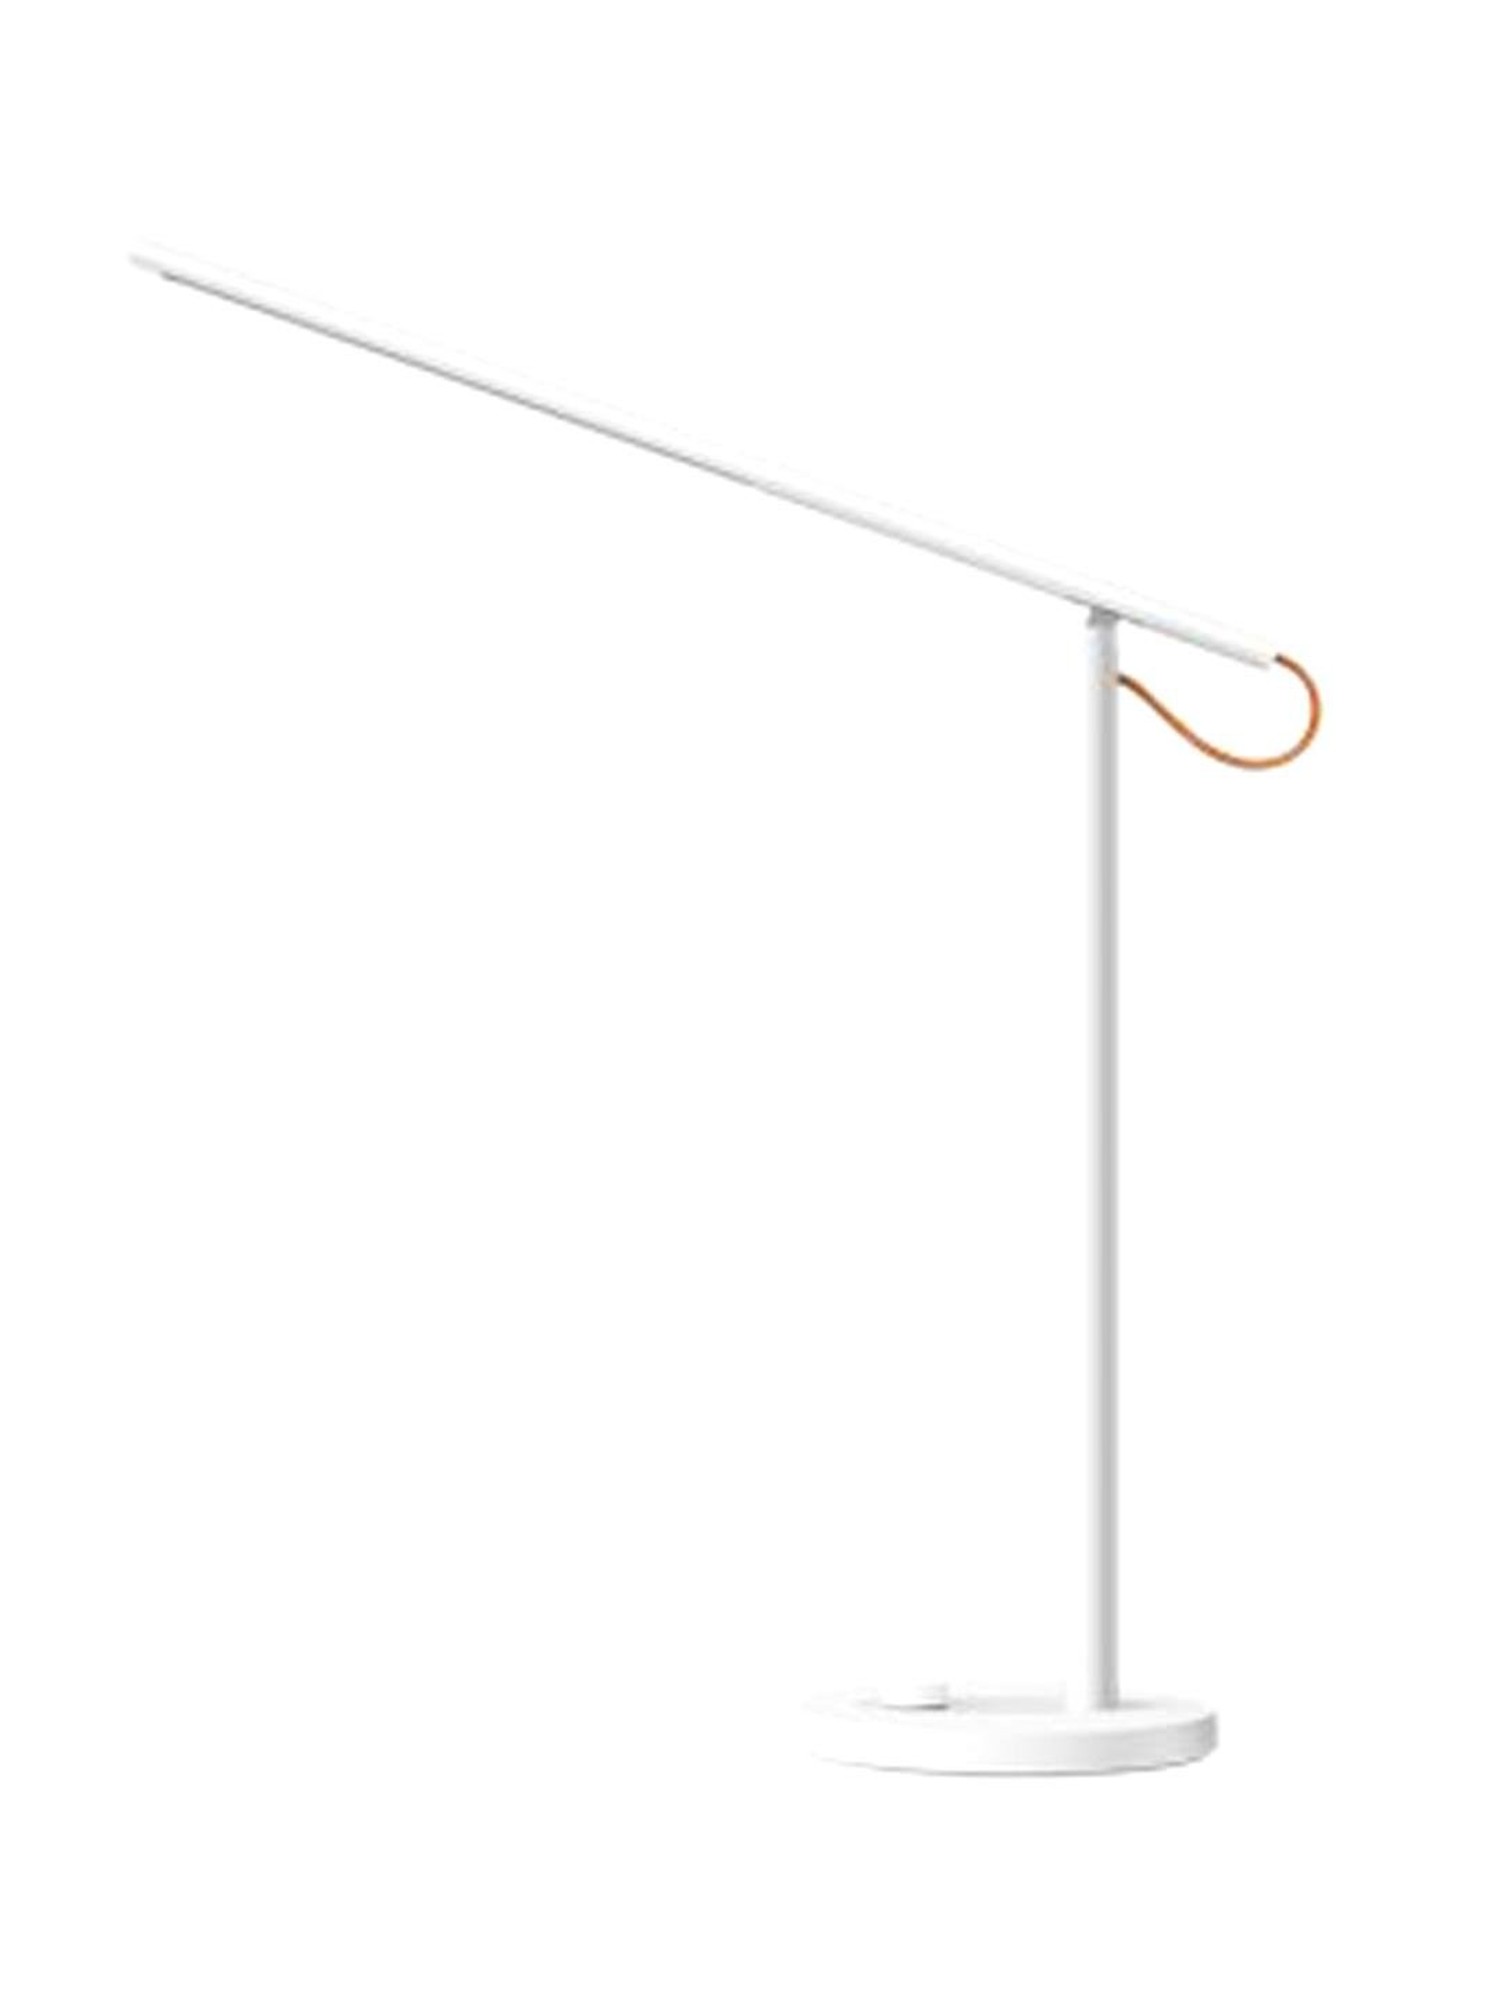 Mi Smart Led Desk Lamp 1s Mjtd01syl, Smart Light Led Desk Table Lamp 1s Gen 2